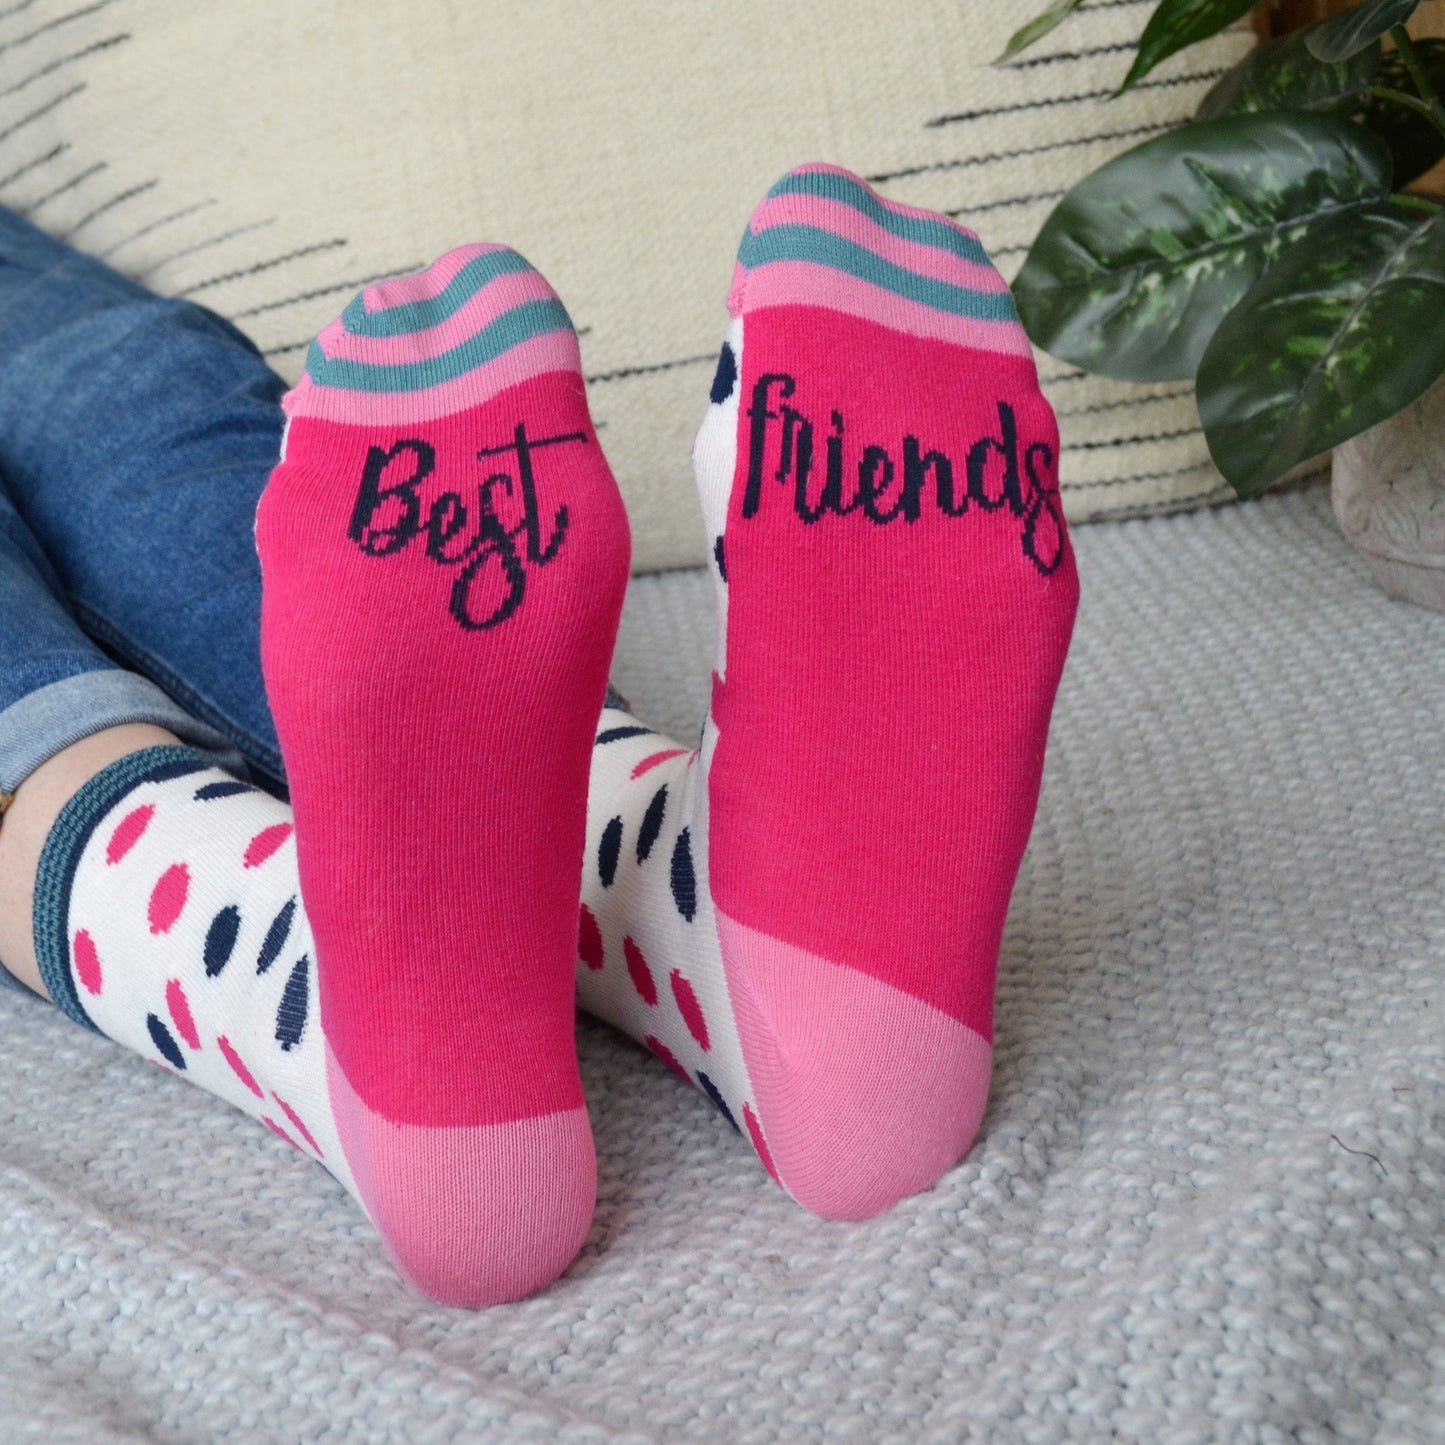 Best Friends Patterned Slogan Socks